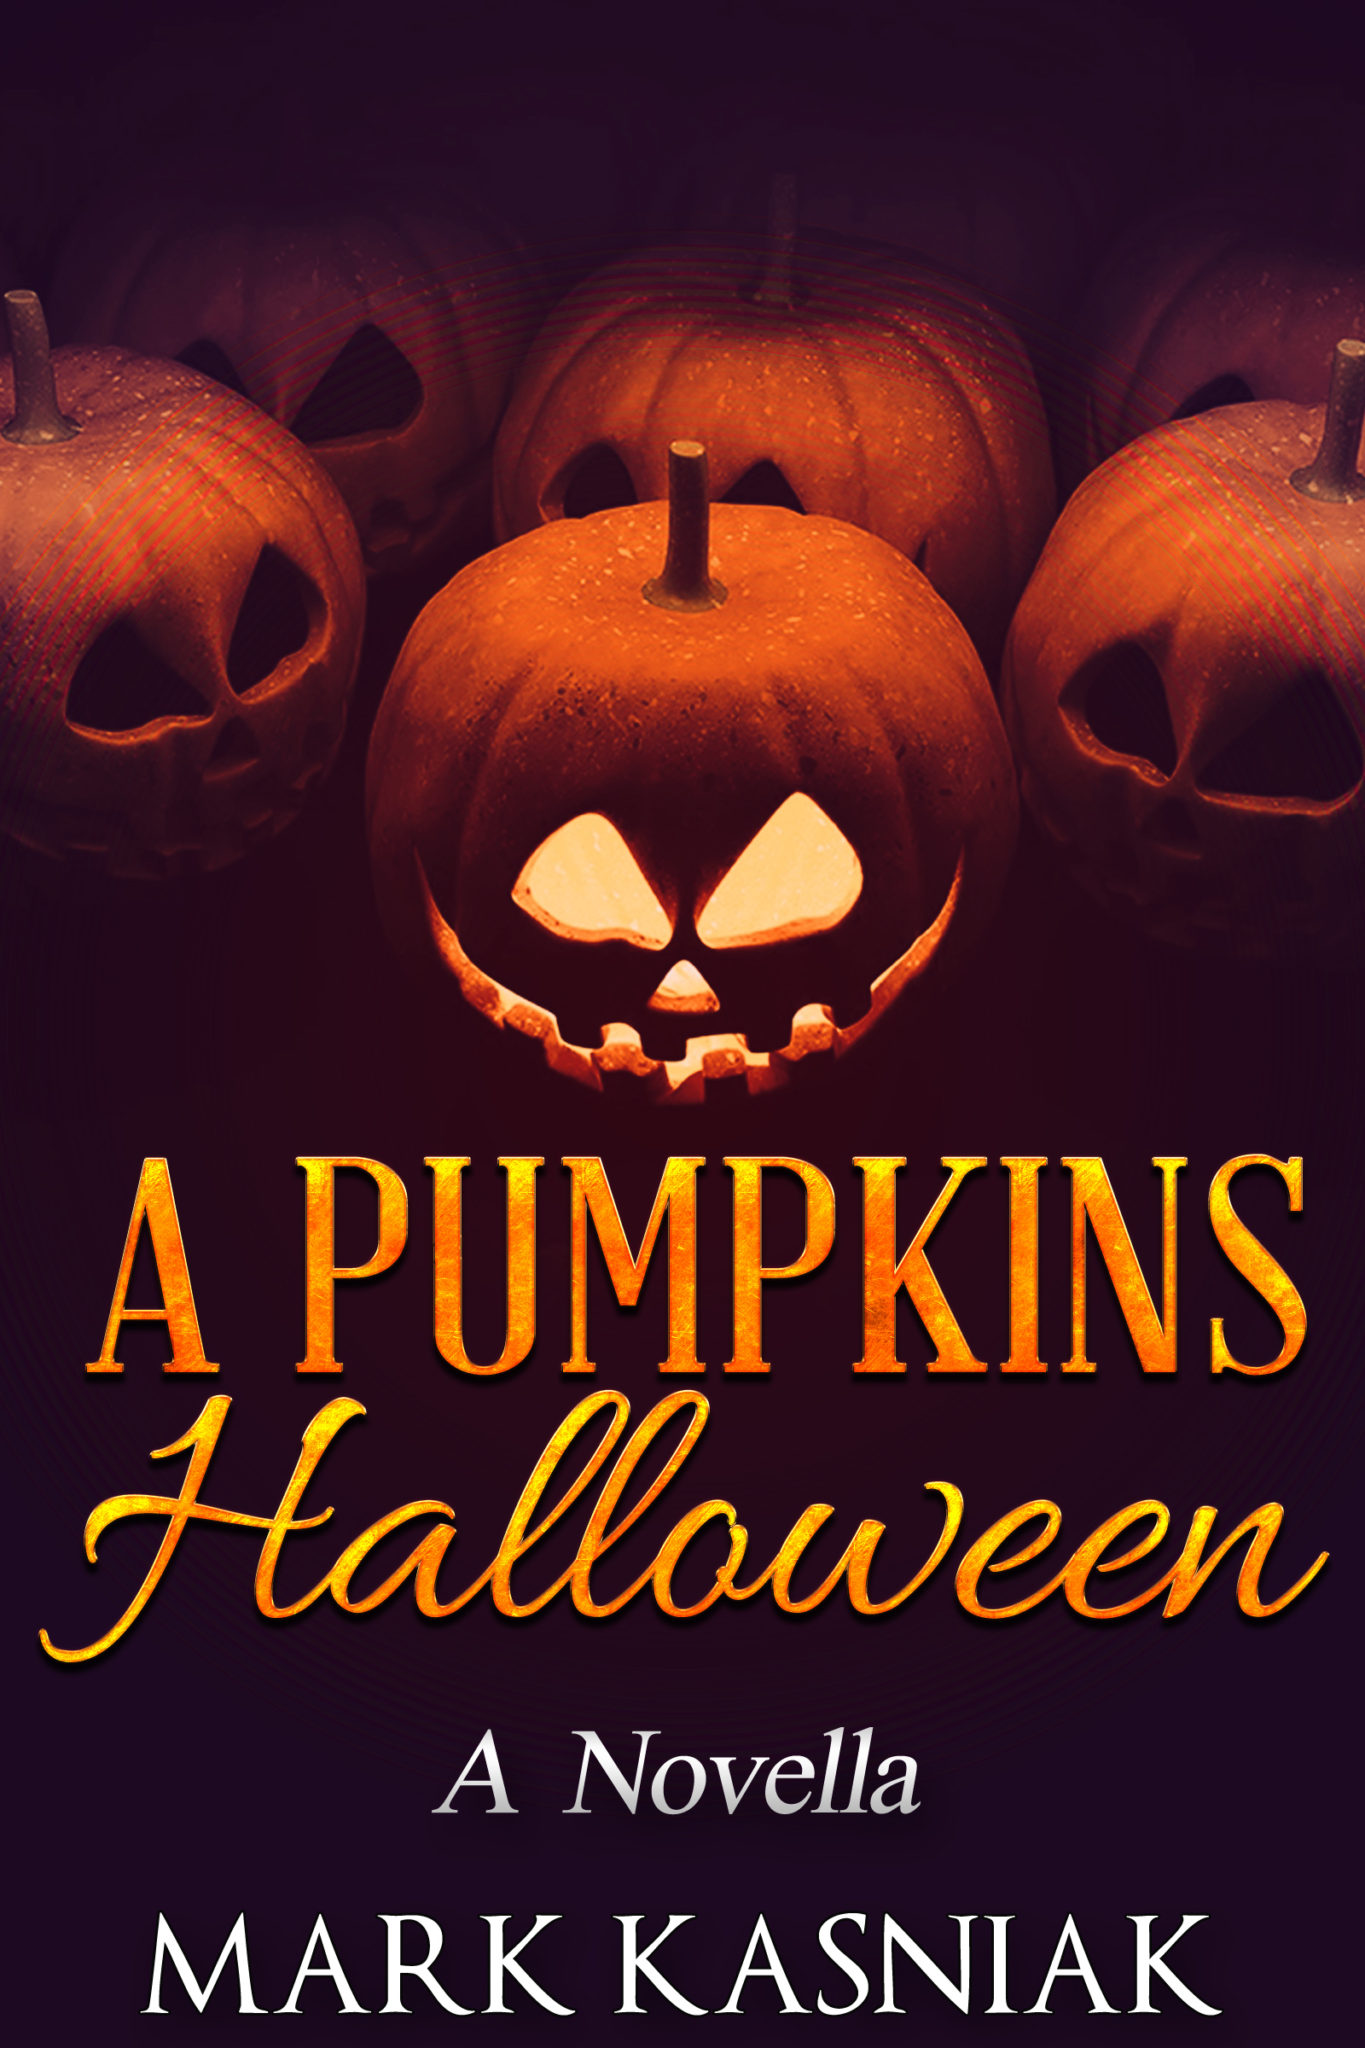 FREE: A Pumpkins Halloween by Mark Kasniak